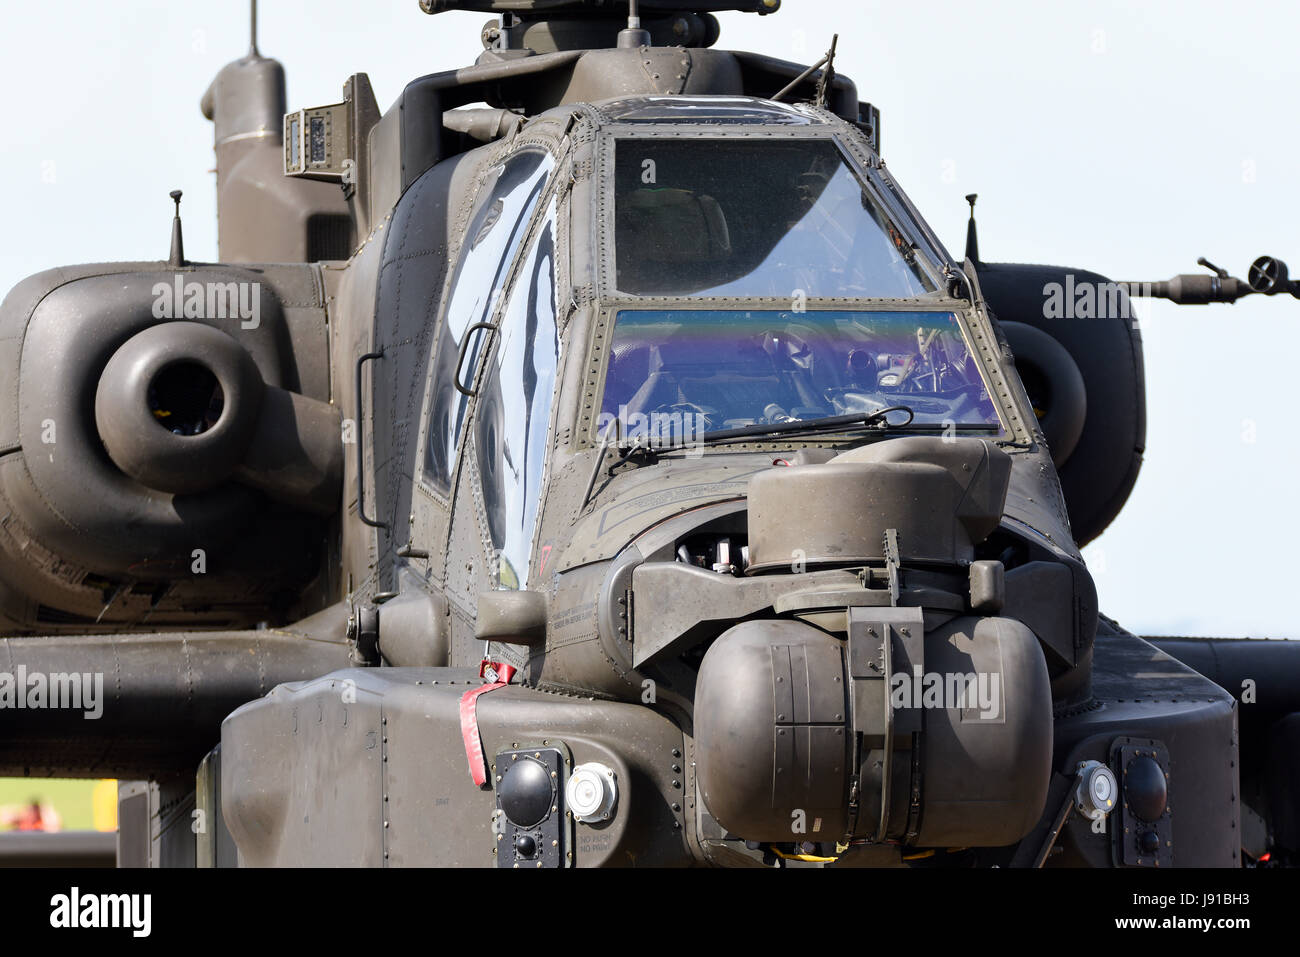 Armée britannique, Army Air corps, Agusta Westland AH-64D Apache Longbow AH-1 attaque hélicoptère détails nez. Capteurs de ciblage Banque D'Images